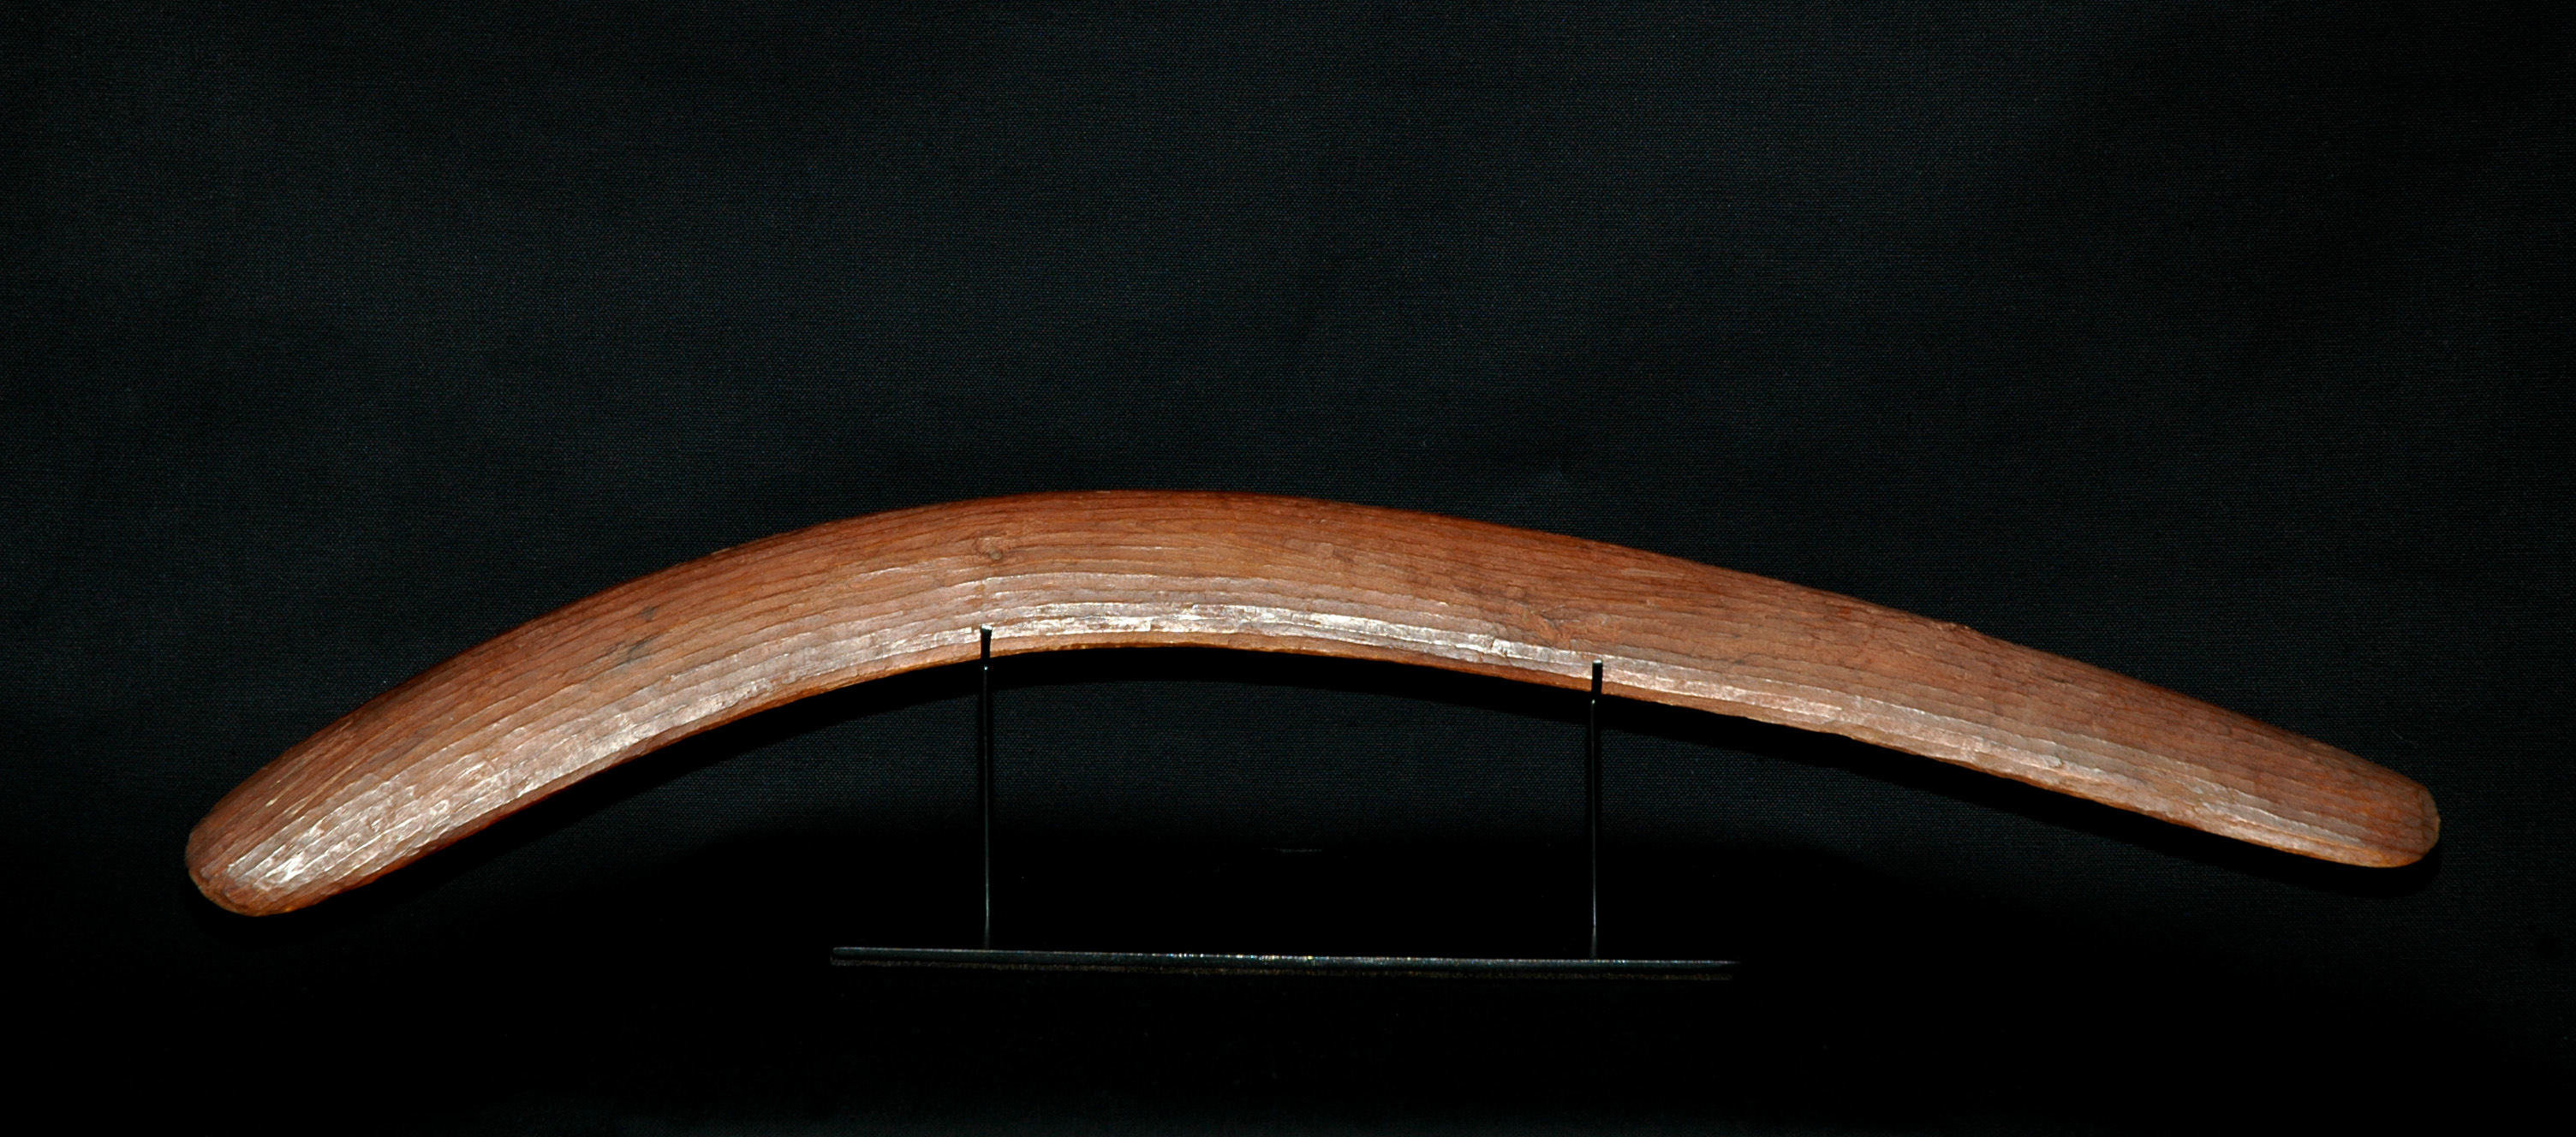 'Boomerang4' - Wood, Aged patina - Physical NFT